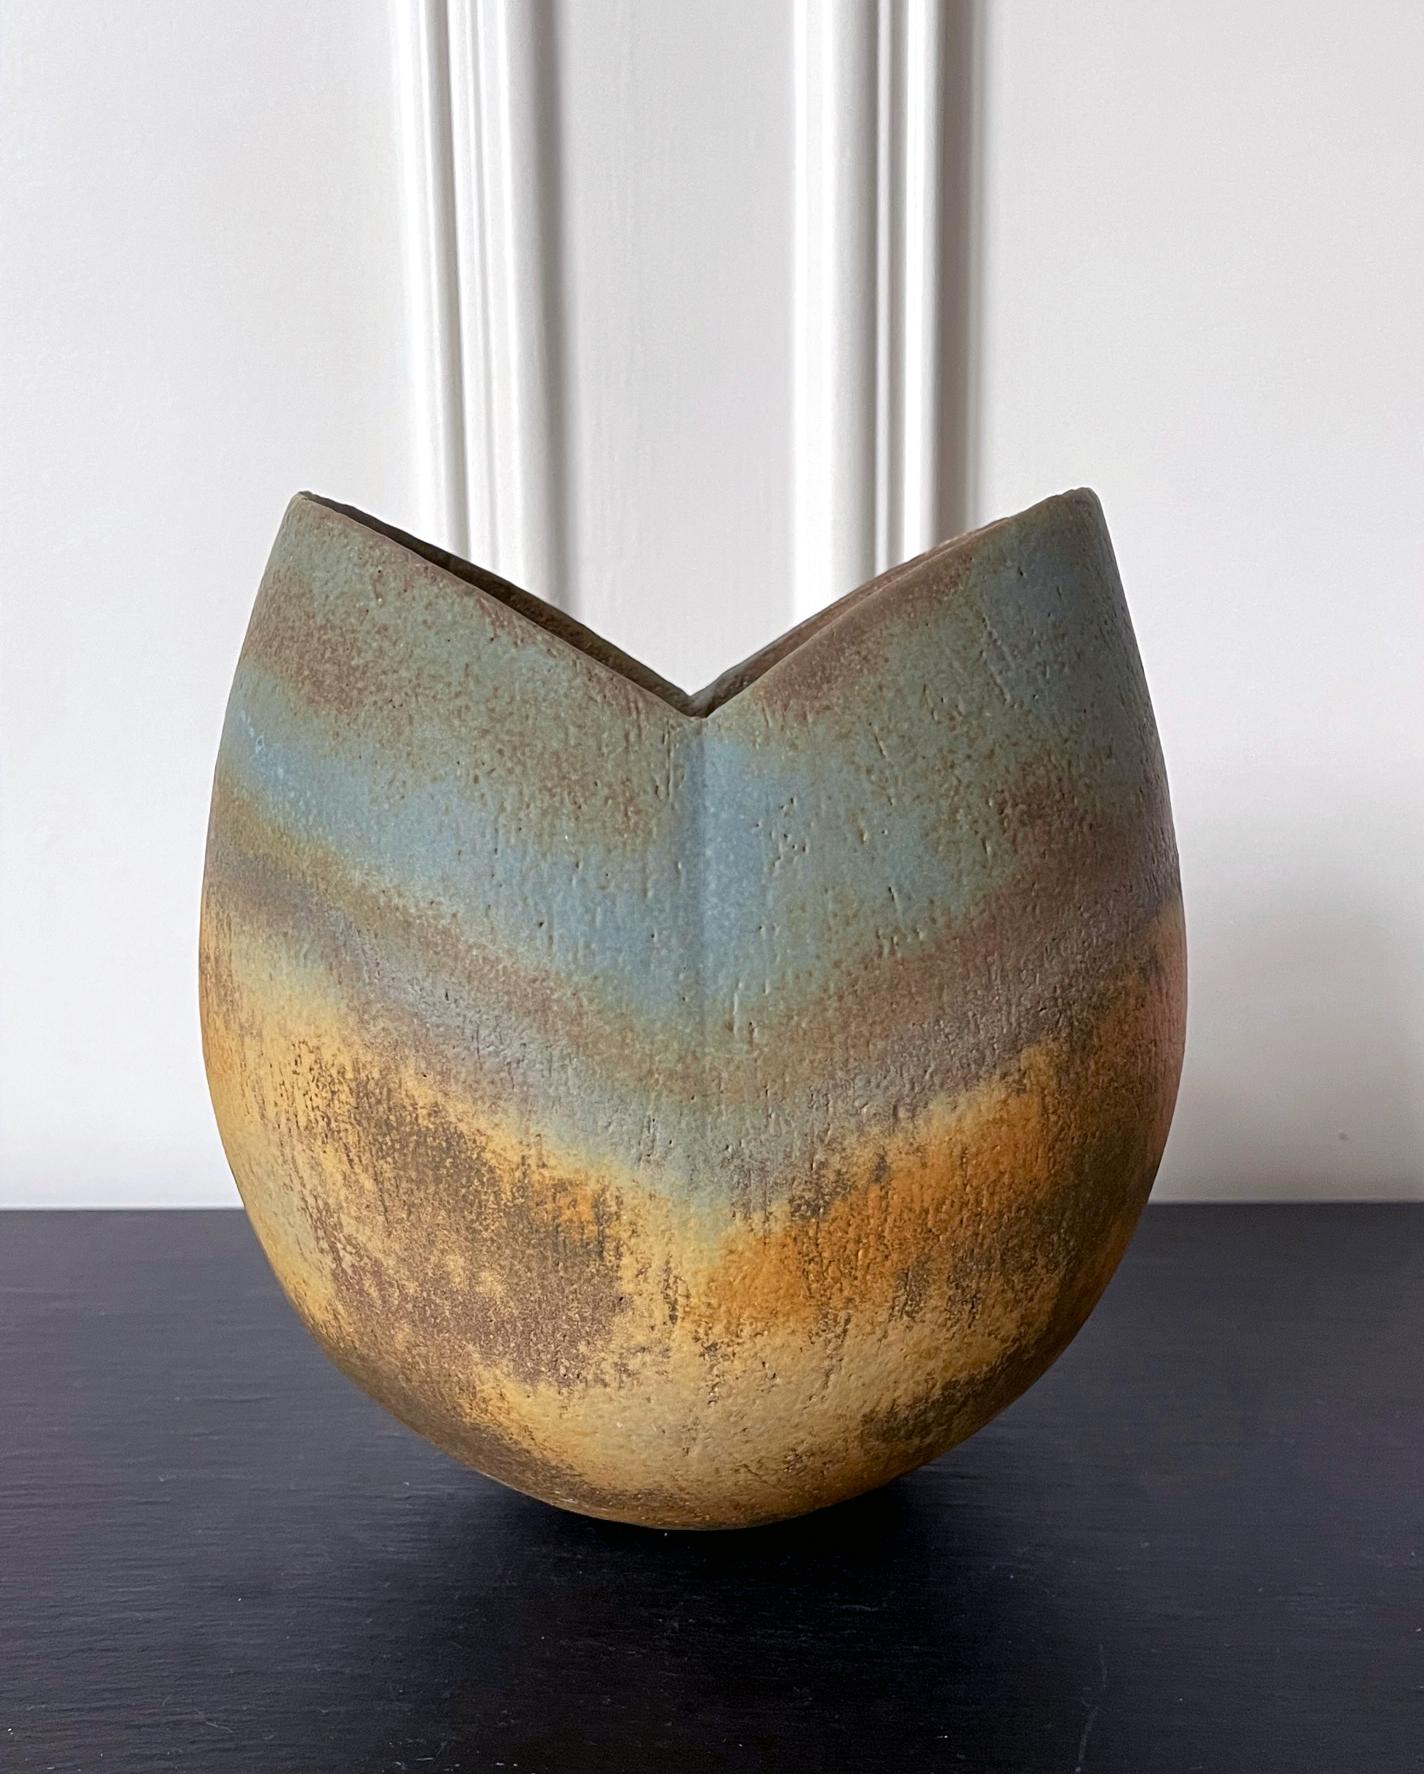 Steingutgefäß mit glasiertem und gestreiftem Design des britischen Studio-Keramikers John Ward (1938-2023), um 1980. Das Gefäß hat eine einfache, aber klare Form zwischen einer tiefen Schale und einer Vase, die mit ihrer organischen Faltung und